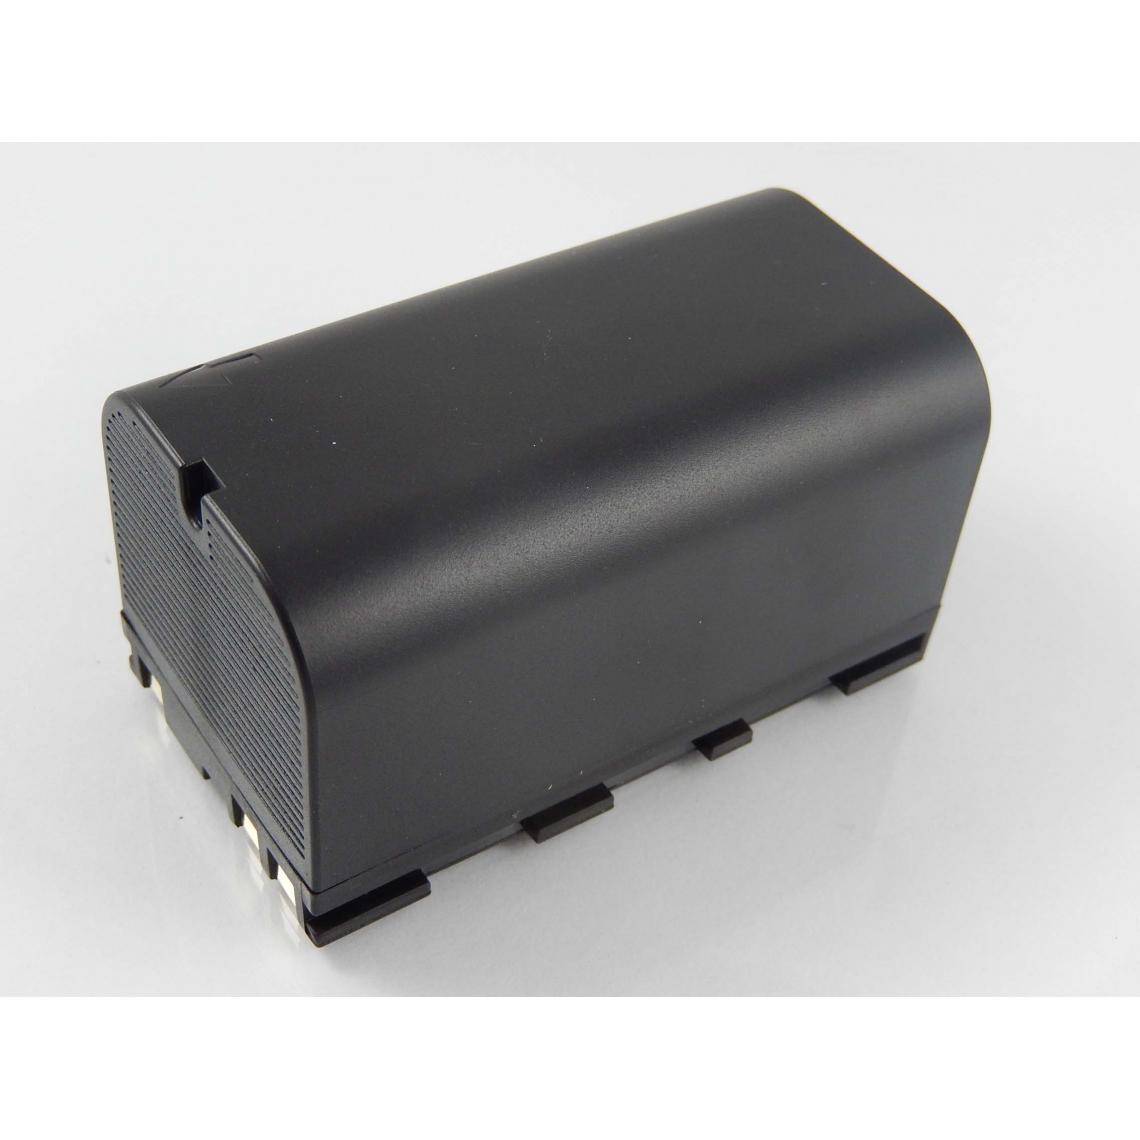 Vhbw - vhbw Batterie compatible avec Leica GPS900, GRX1200, GS10, GS15 dispositif de mesure laser, outil de mesure (5600mAh, 7,4V, Li-ion) - Piles rechargeables